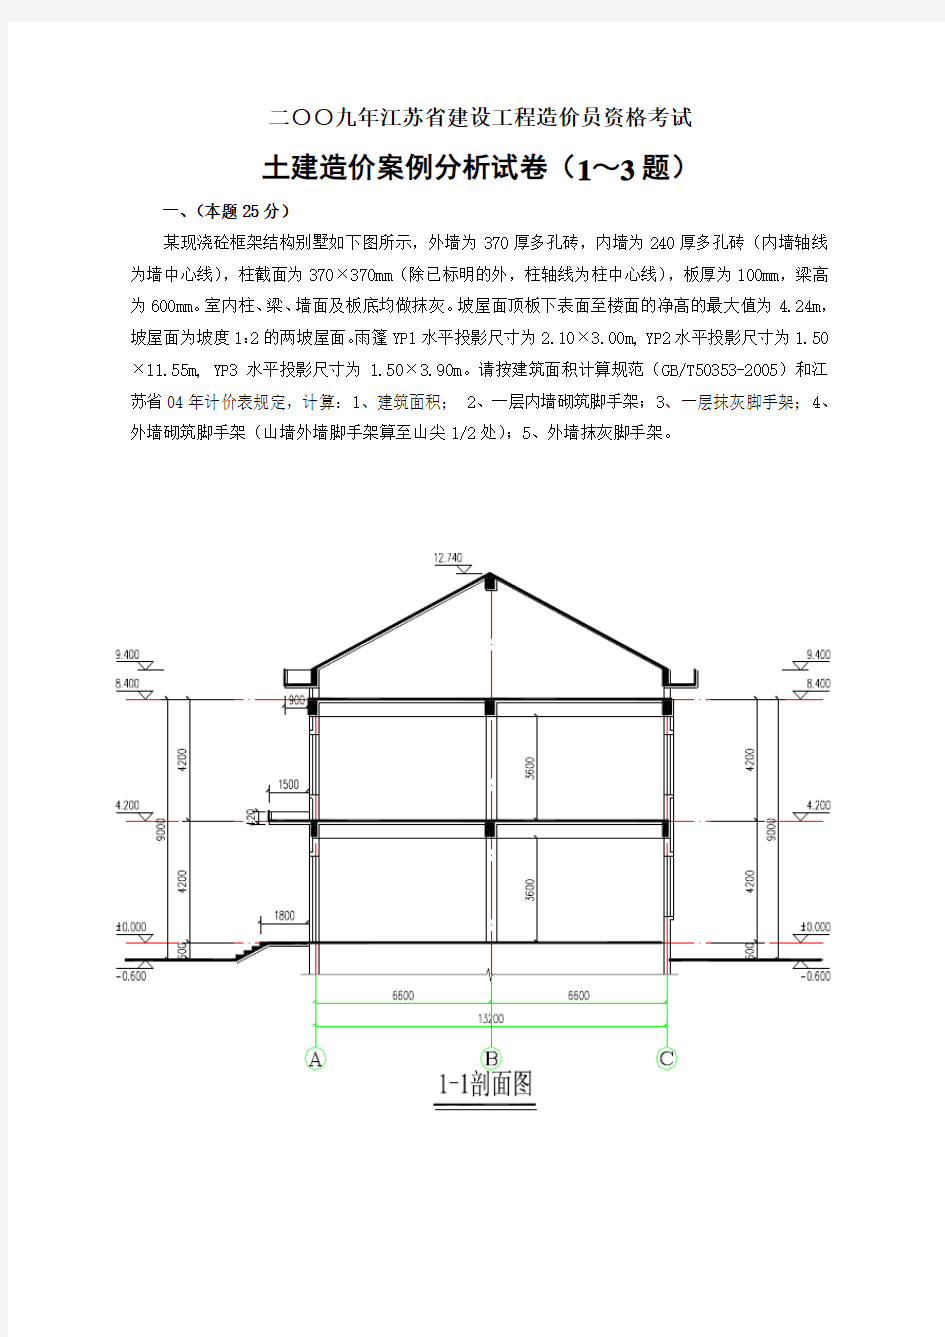 2009年江苏省建设工程造价员资格考试土建造价案例分析试卷(含图及计算过程)_secret